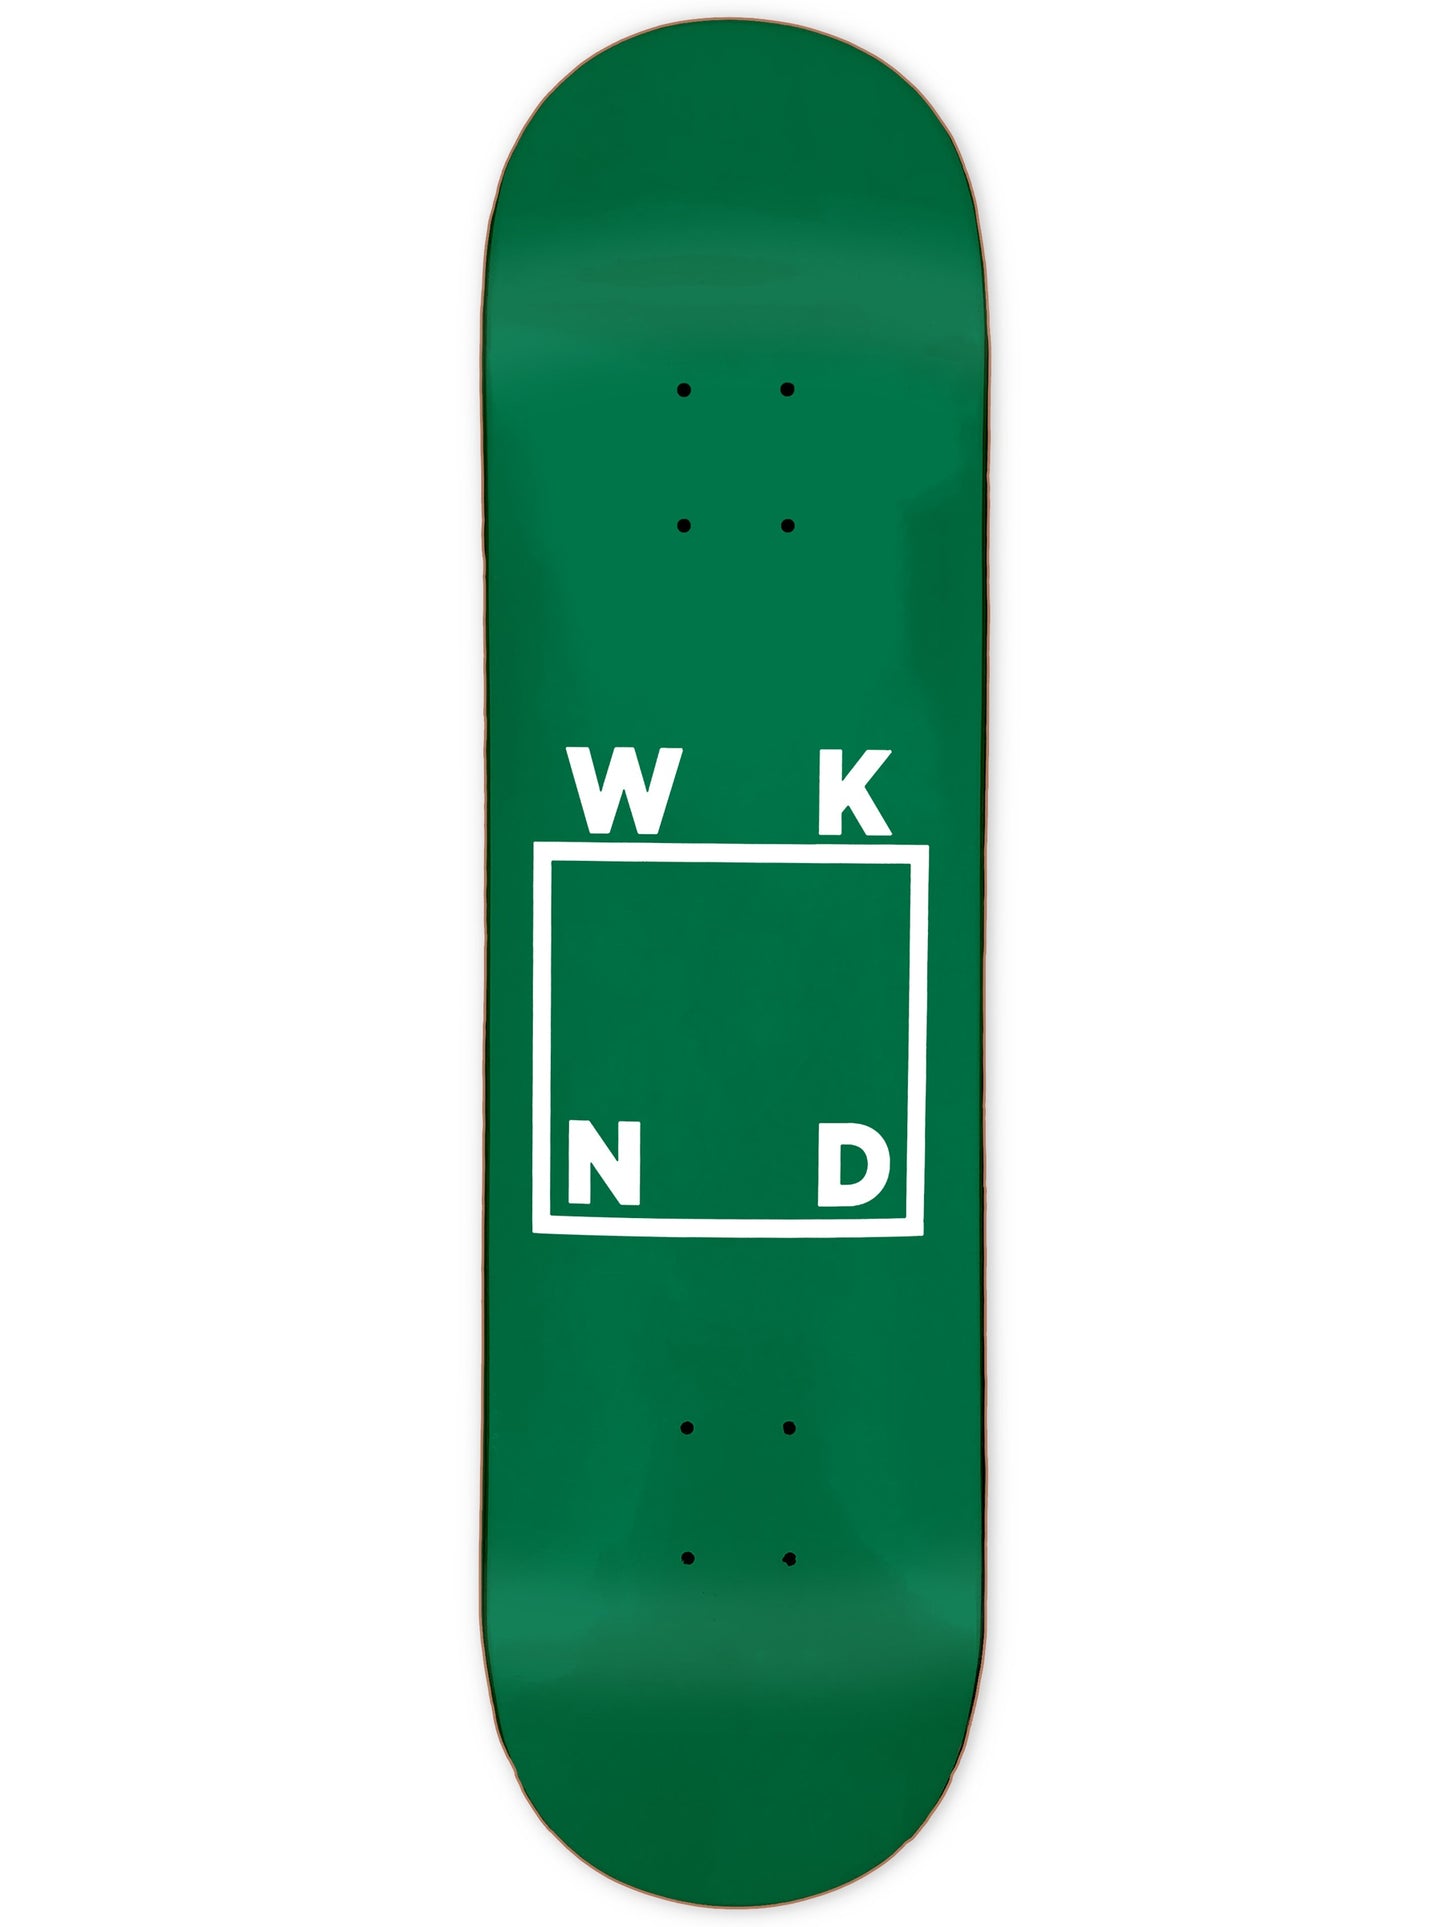 WKND OG เขียว/ขาว Logo Deck 8.125"SB / 8.5"TH